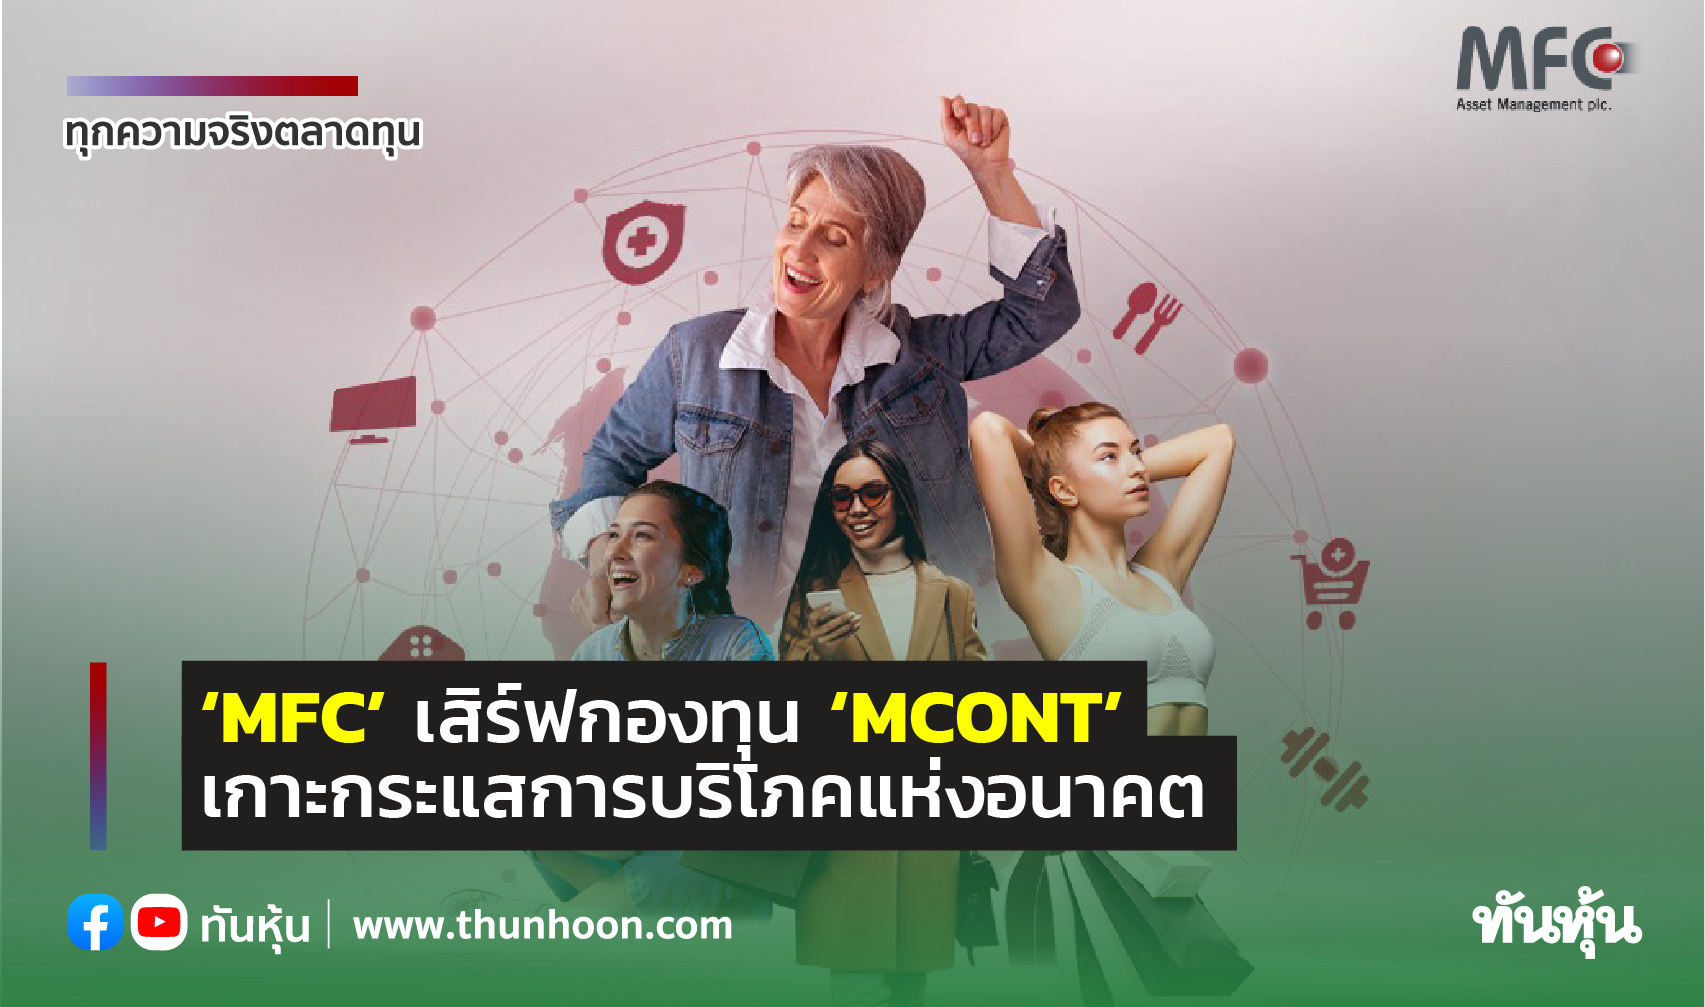 ‘MFC’ เสิร์ฟกองทุน ‘MCONT’  เกาะกระแสการบริโภคแห่งอนาคต